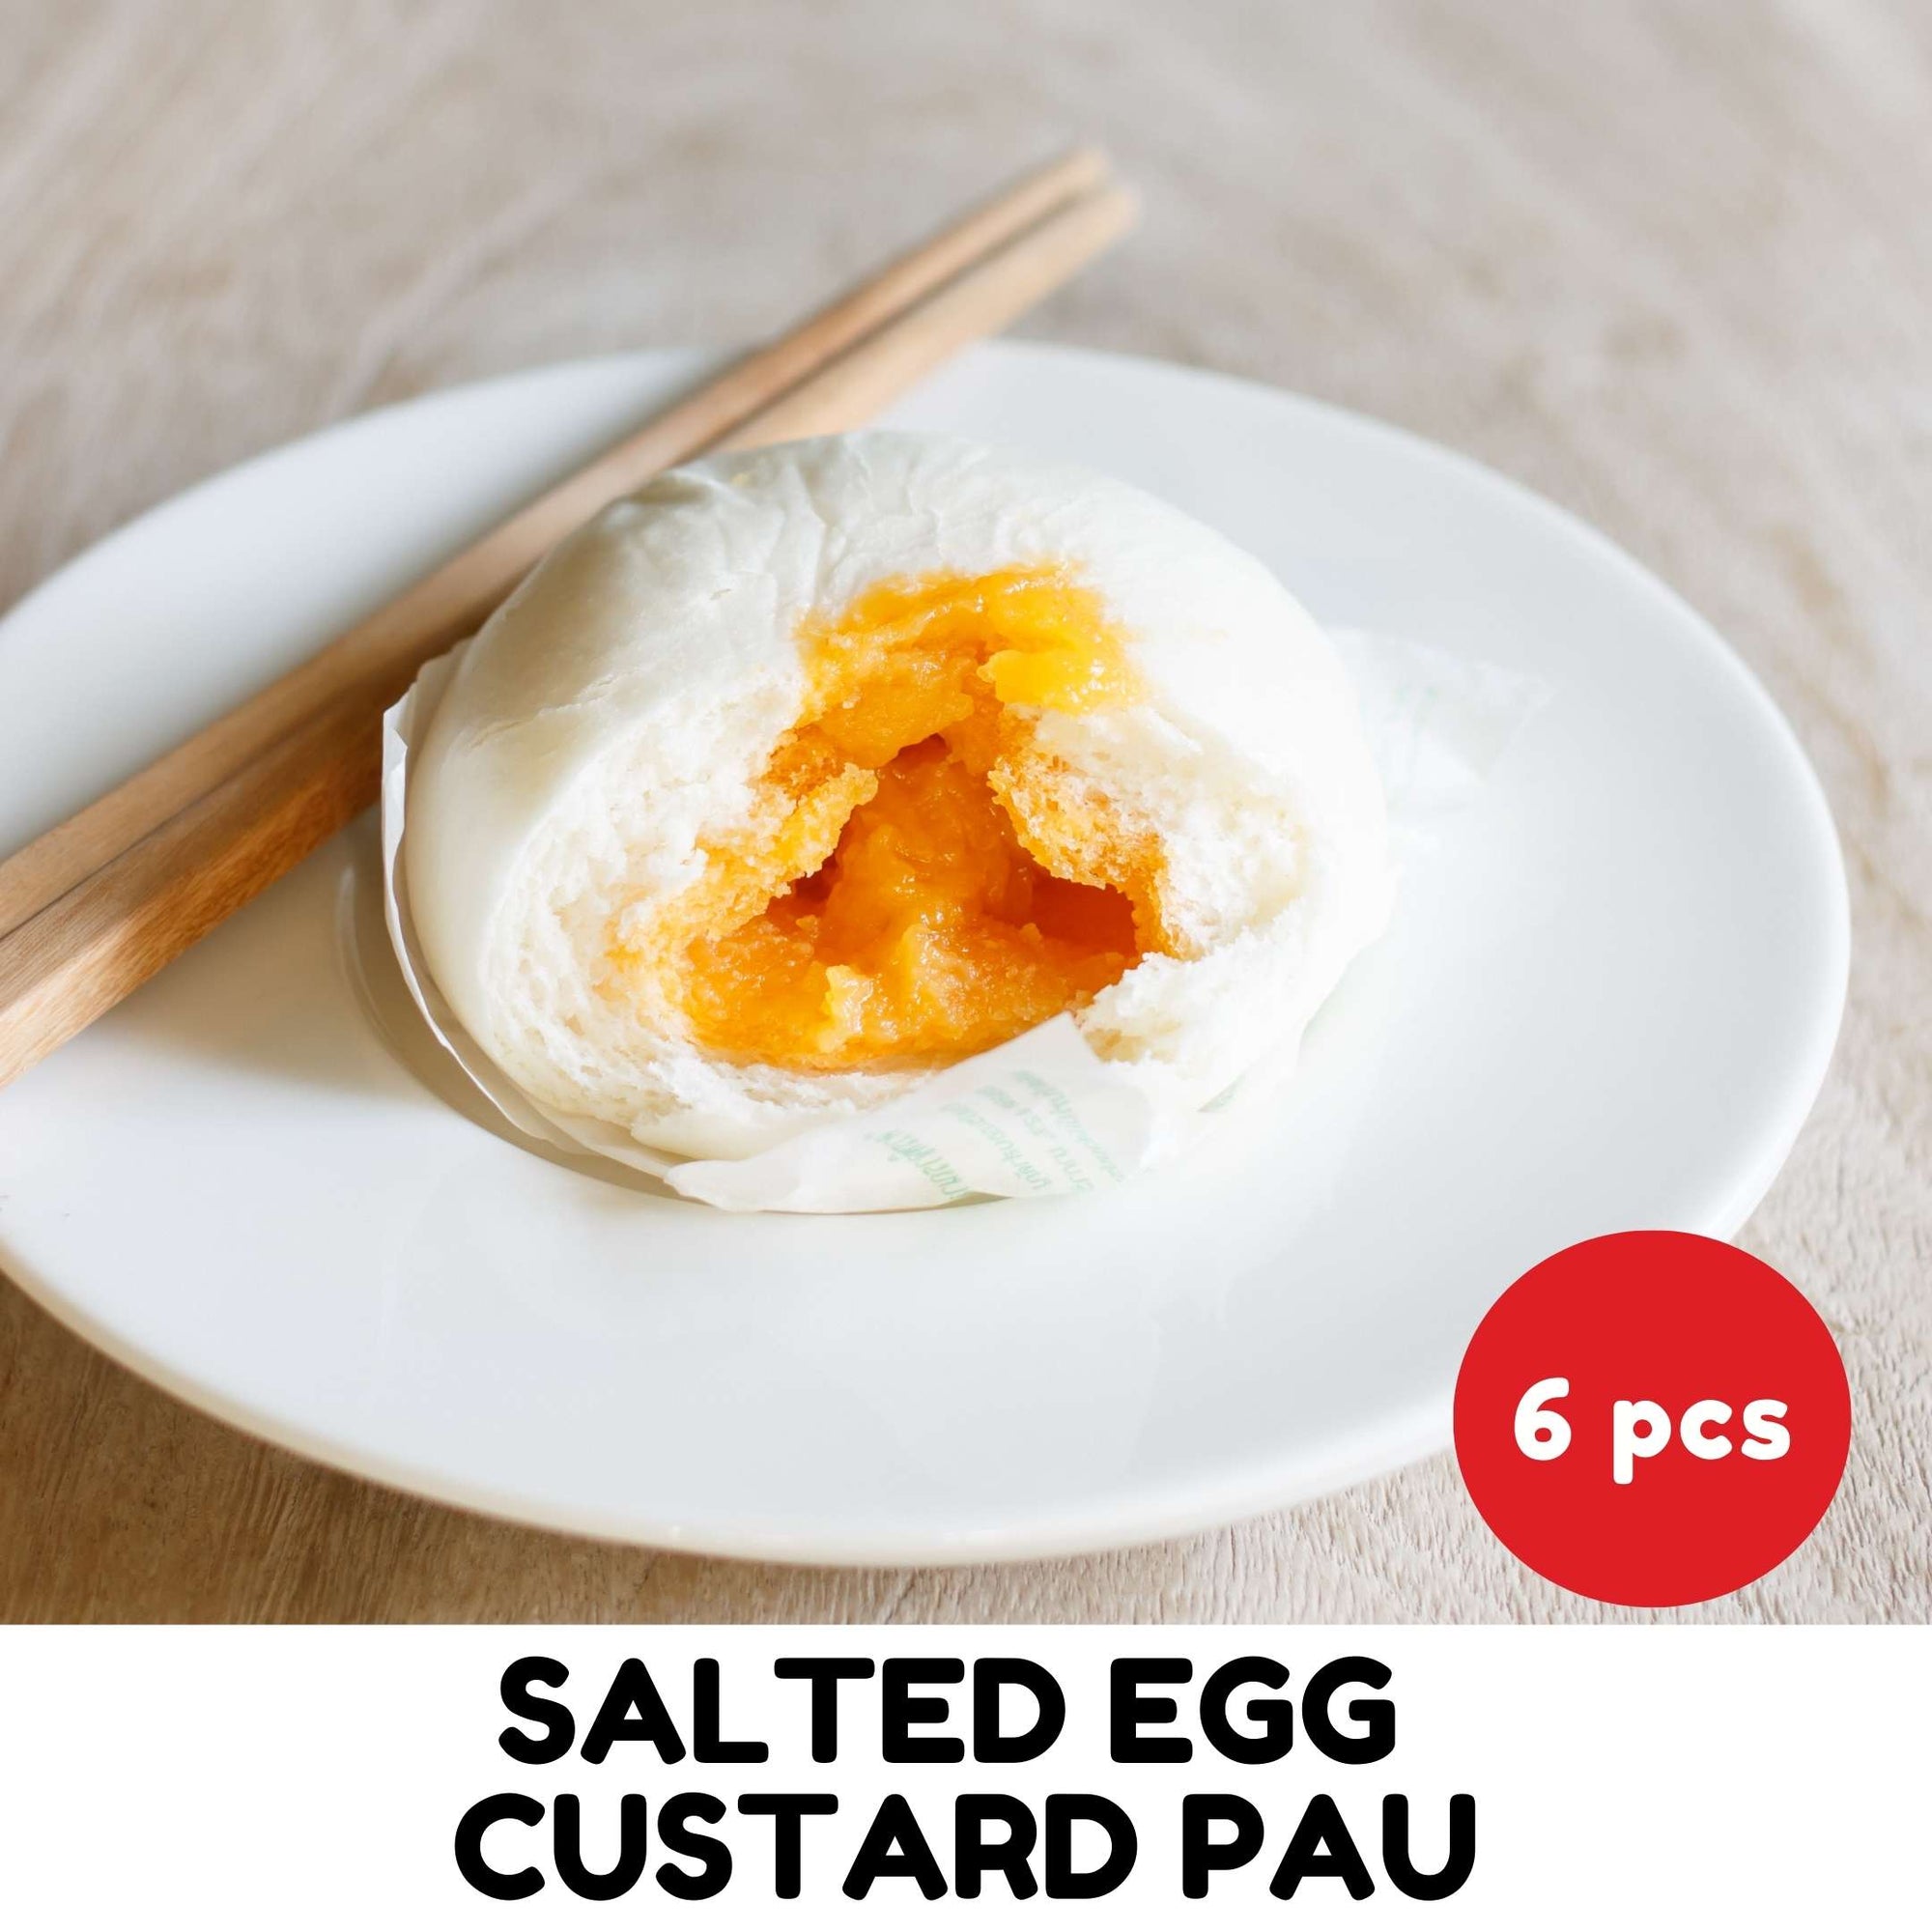 6 Pieces of Salted Egg Custard buns/pau